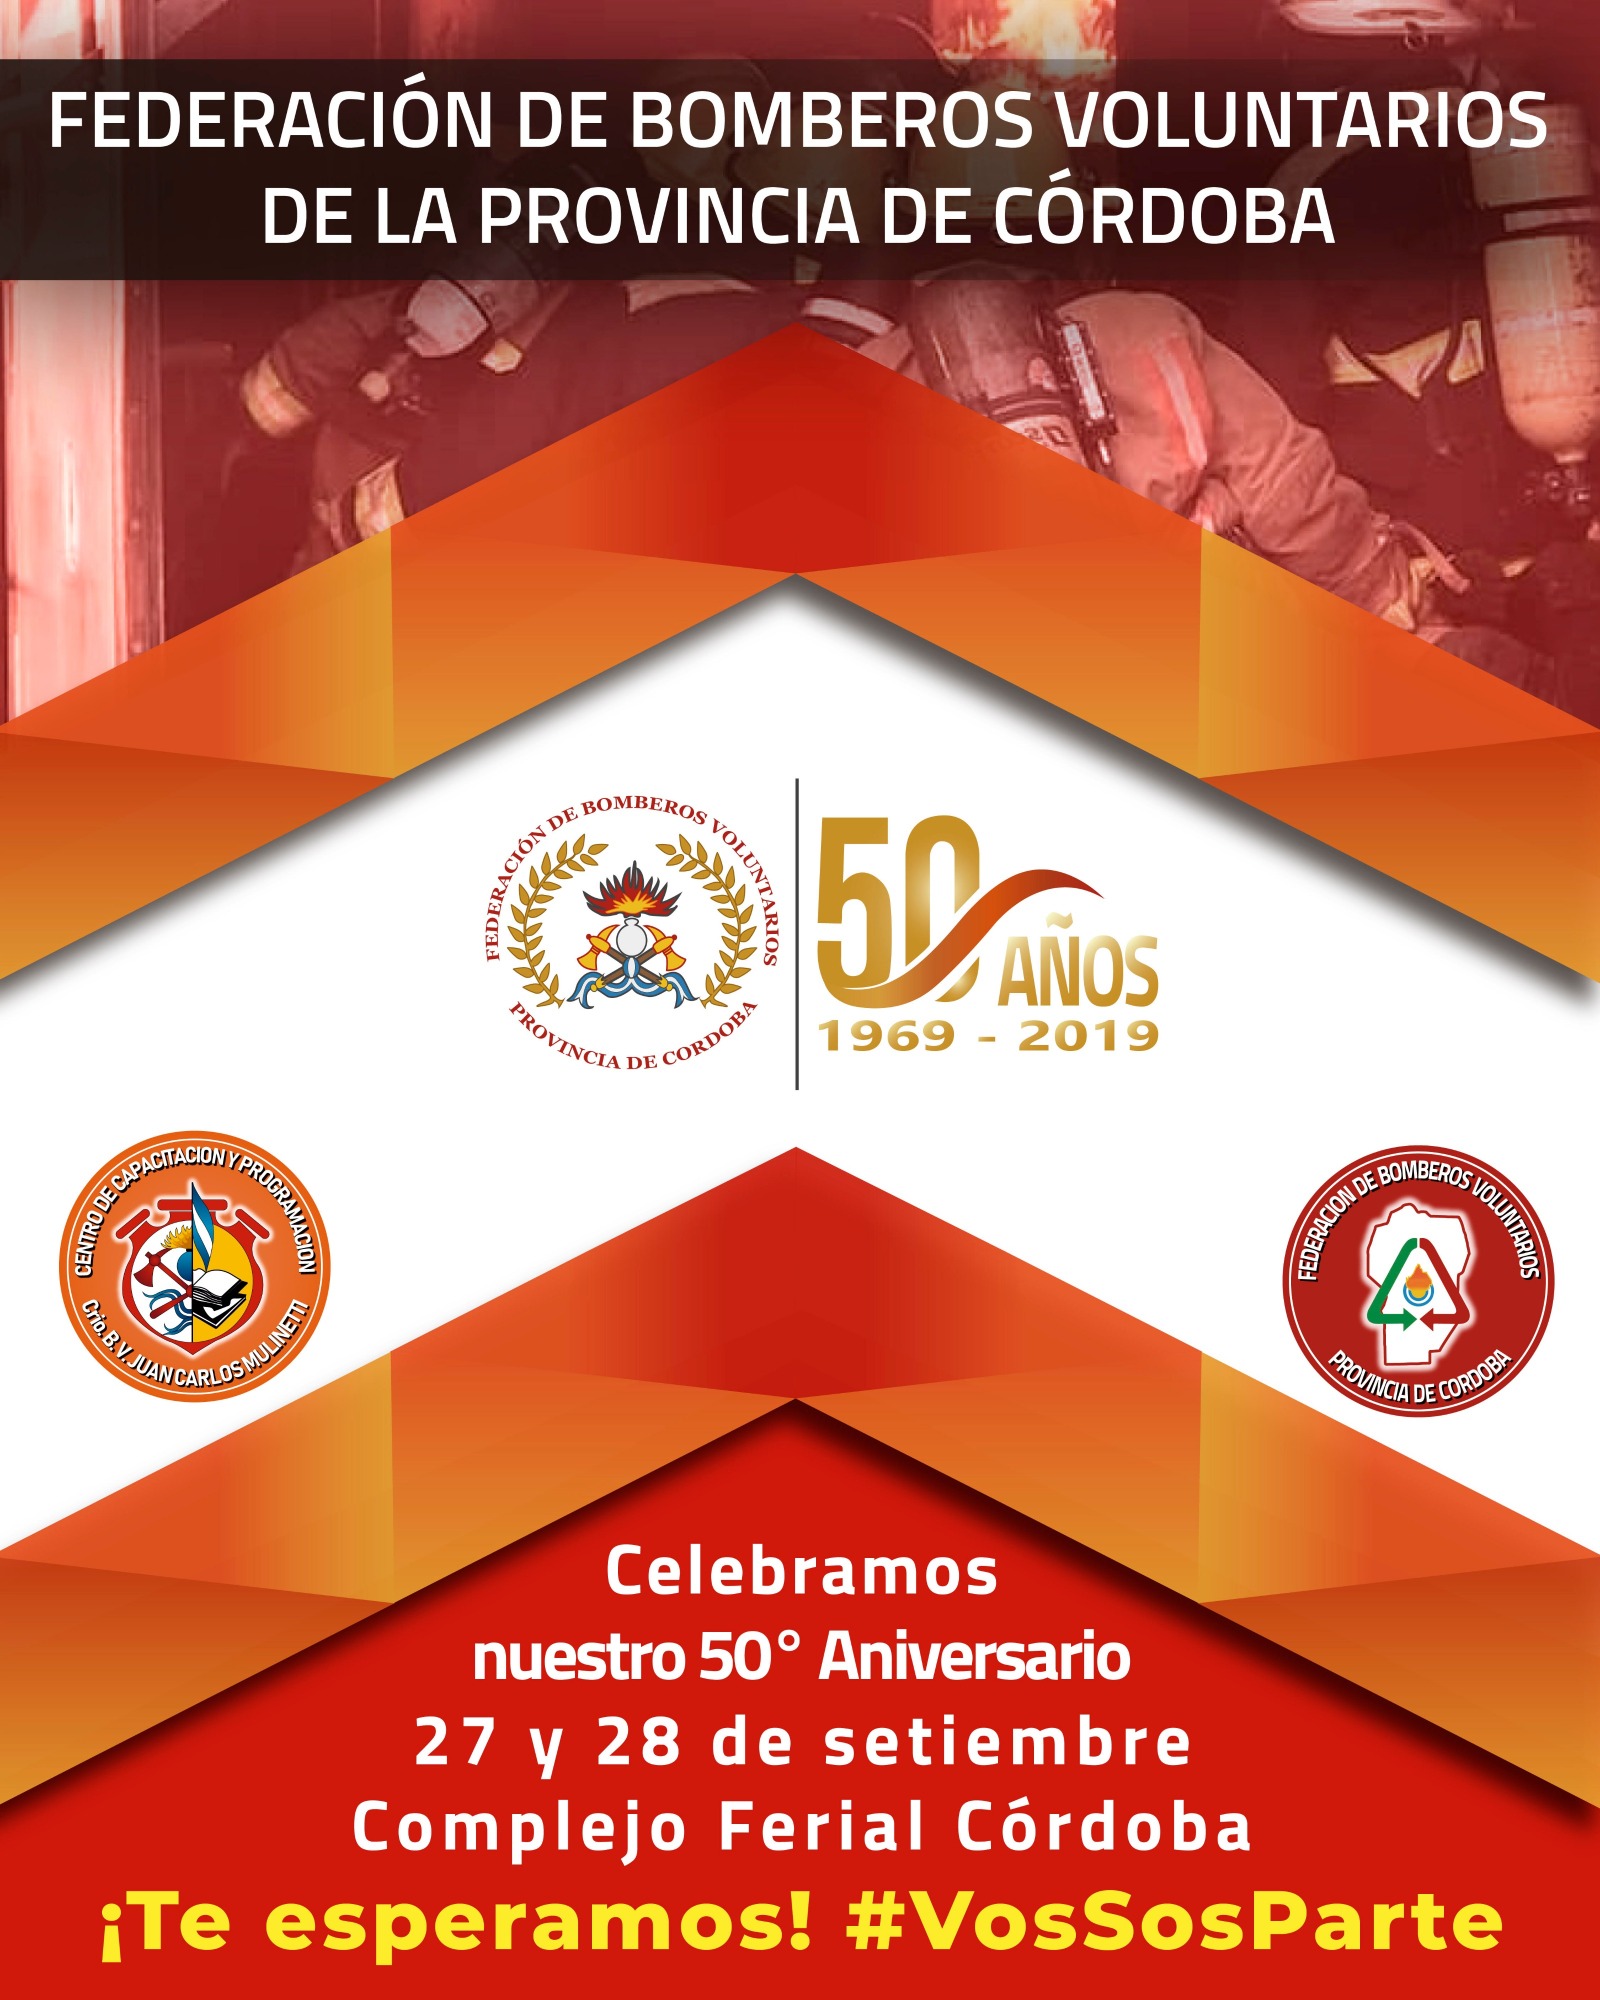 Celebramos el 50° Aniversario de nuestra Federación